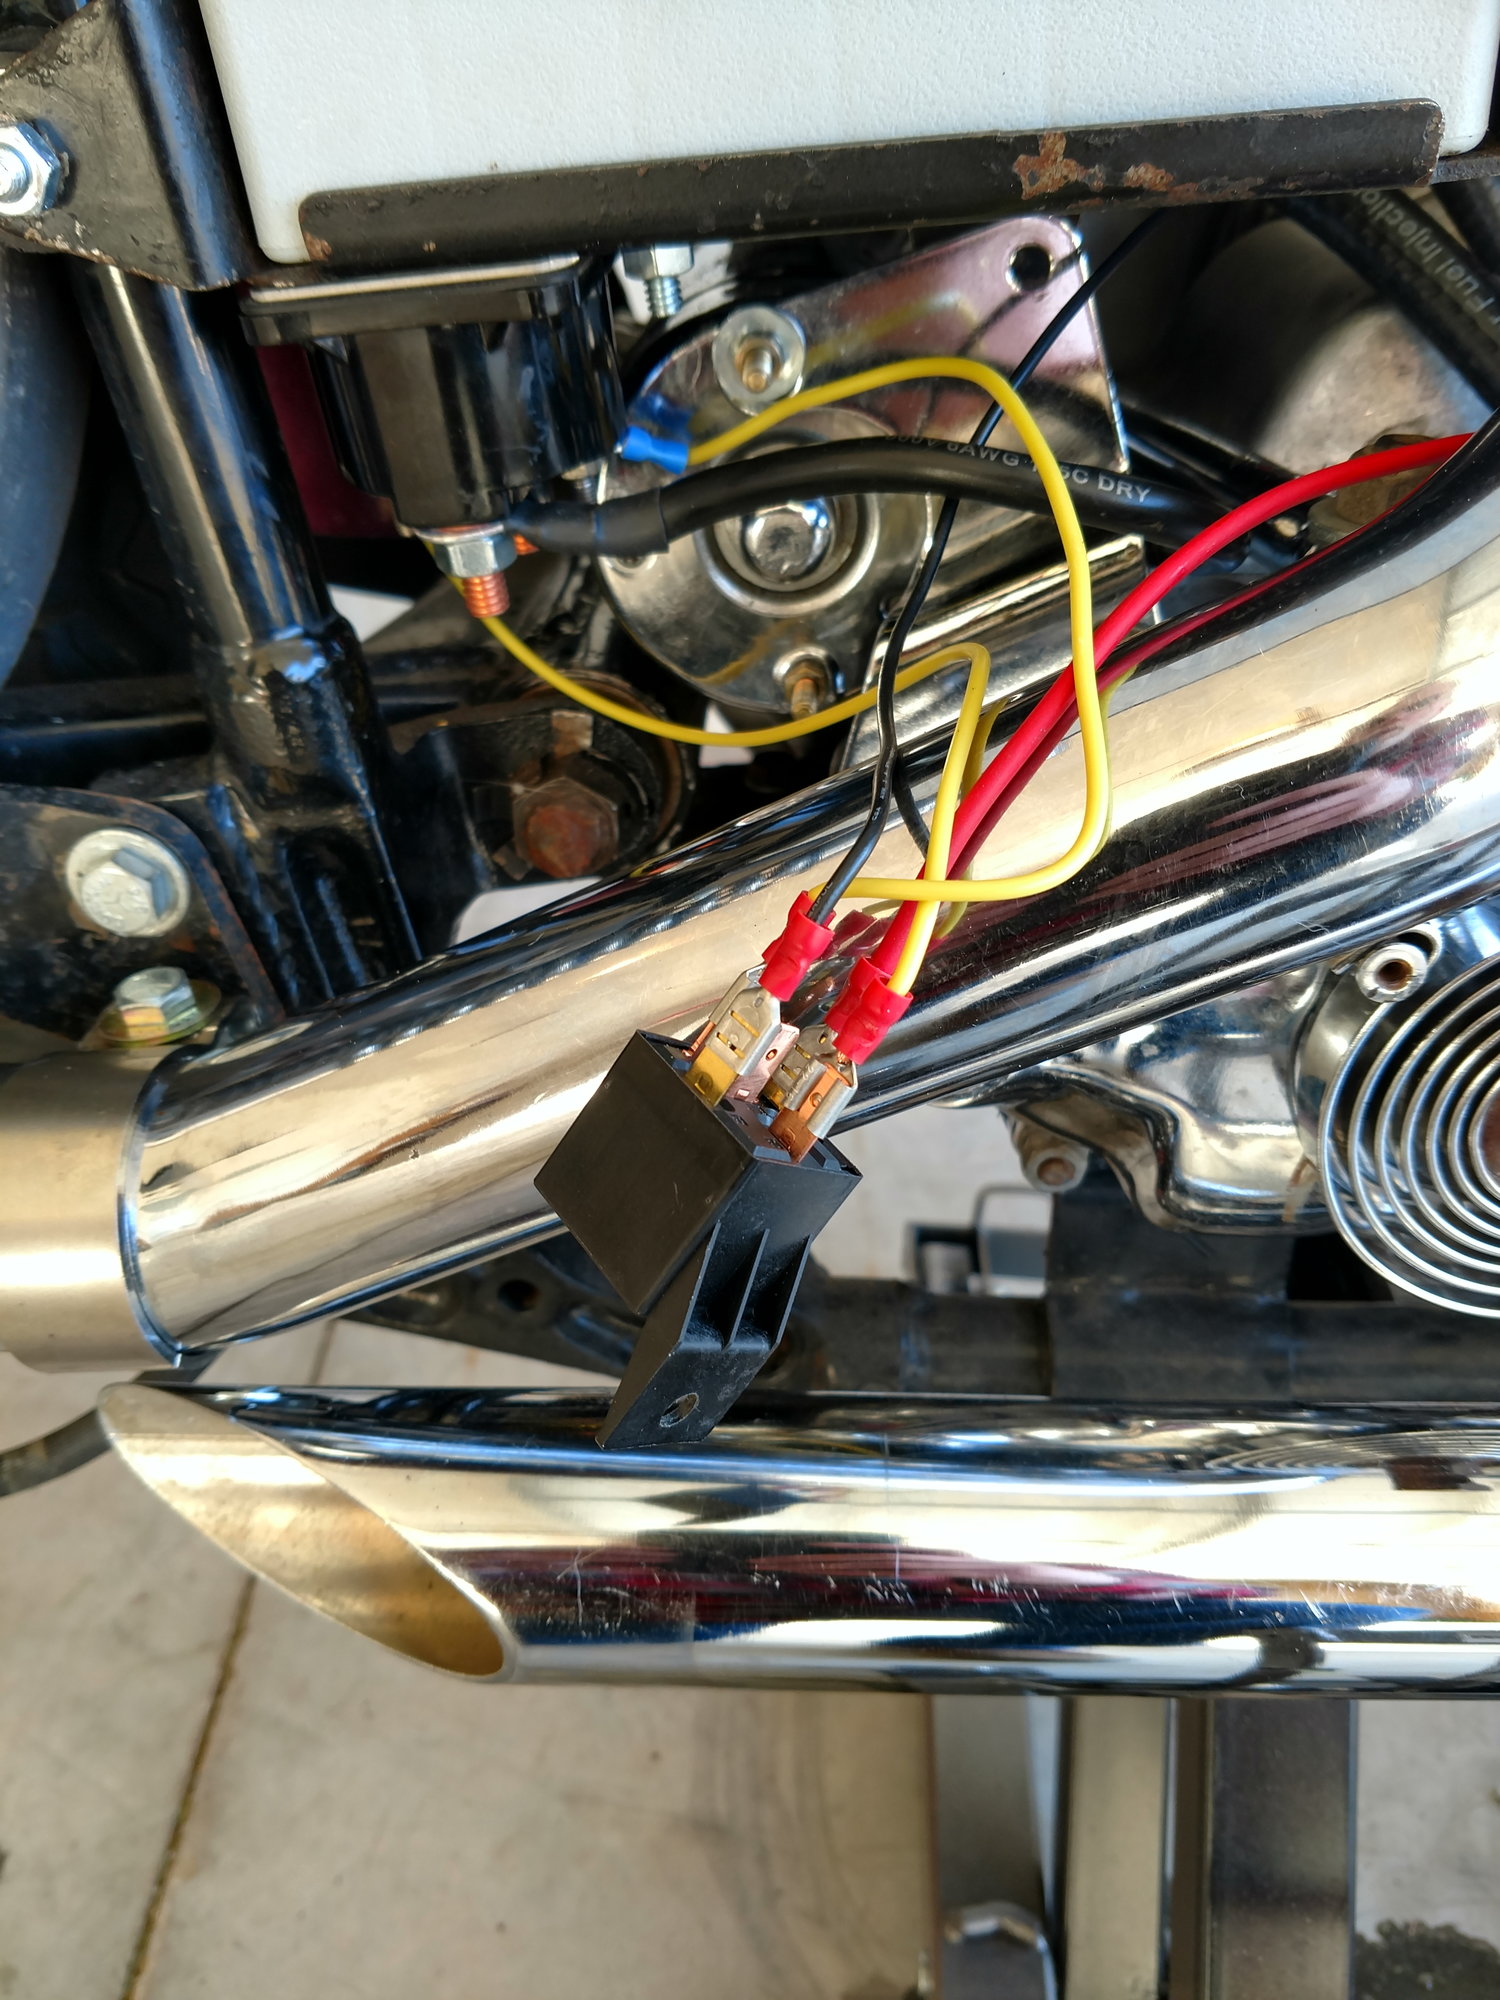 Lever Action Solenoid - Harley Davidson Forums wiring diagram lights 